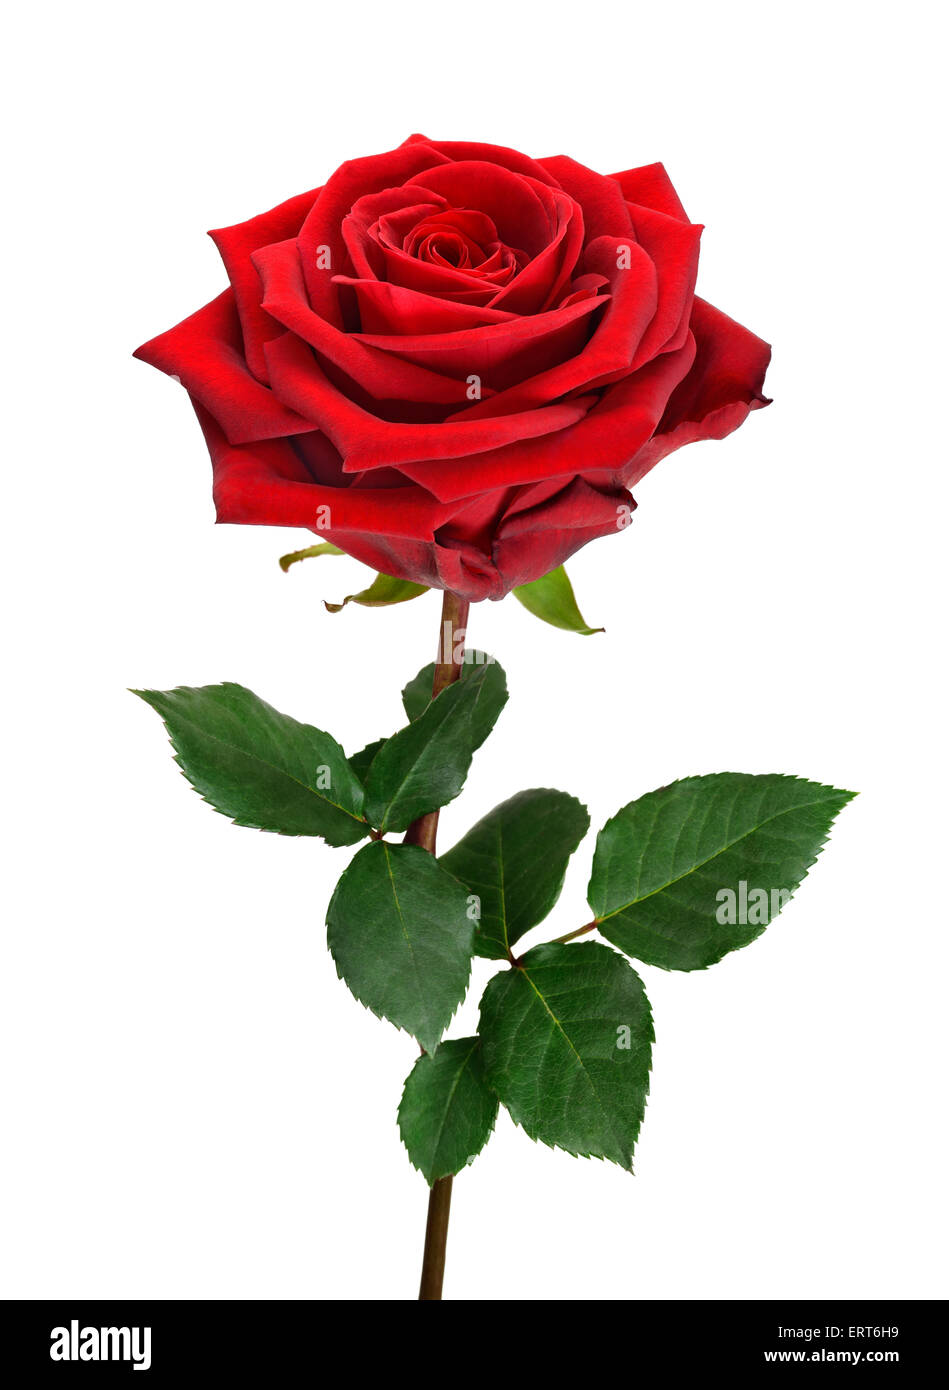 Voll blühte, perfekte rote rose mit Stengel und Blätter auf reinen weißen Hintergrund Stockfoto